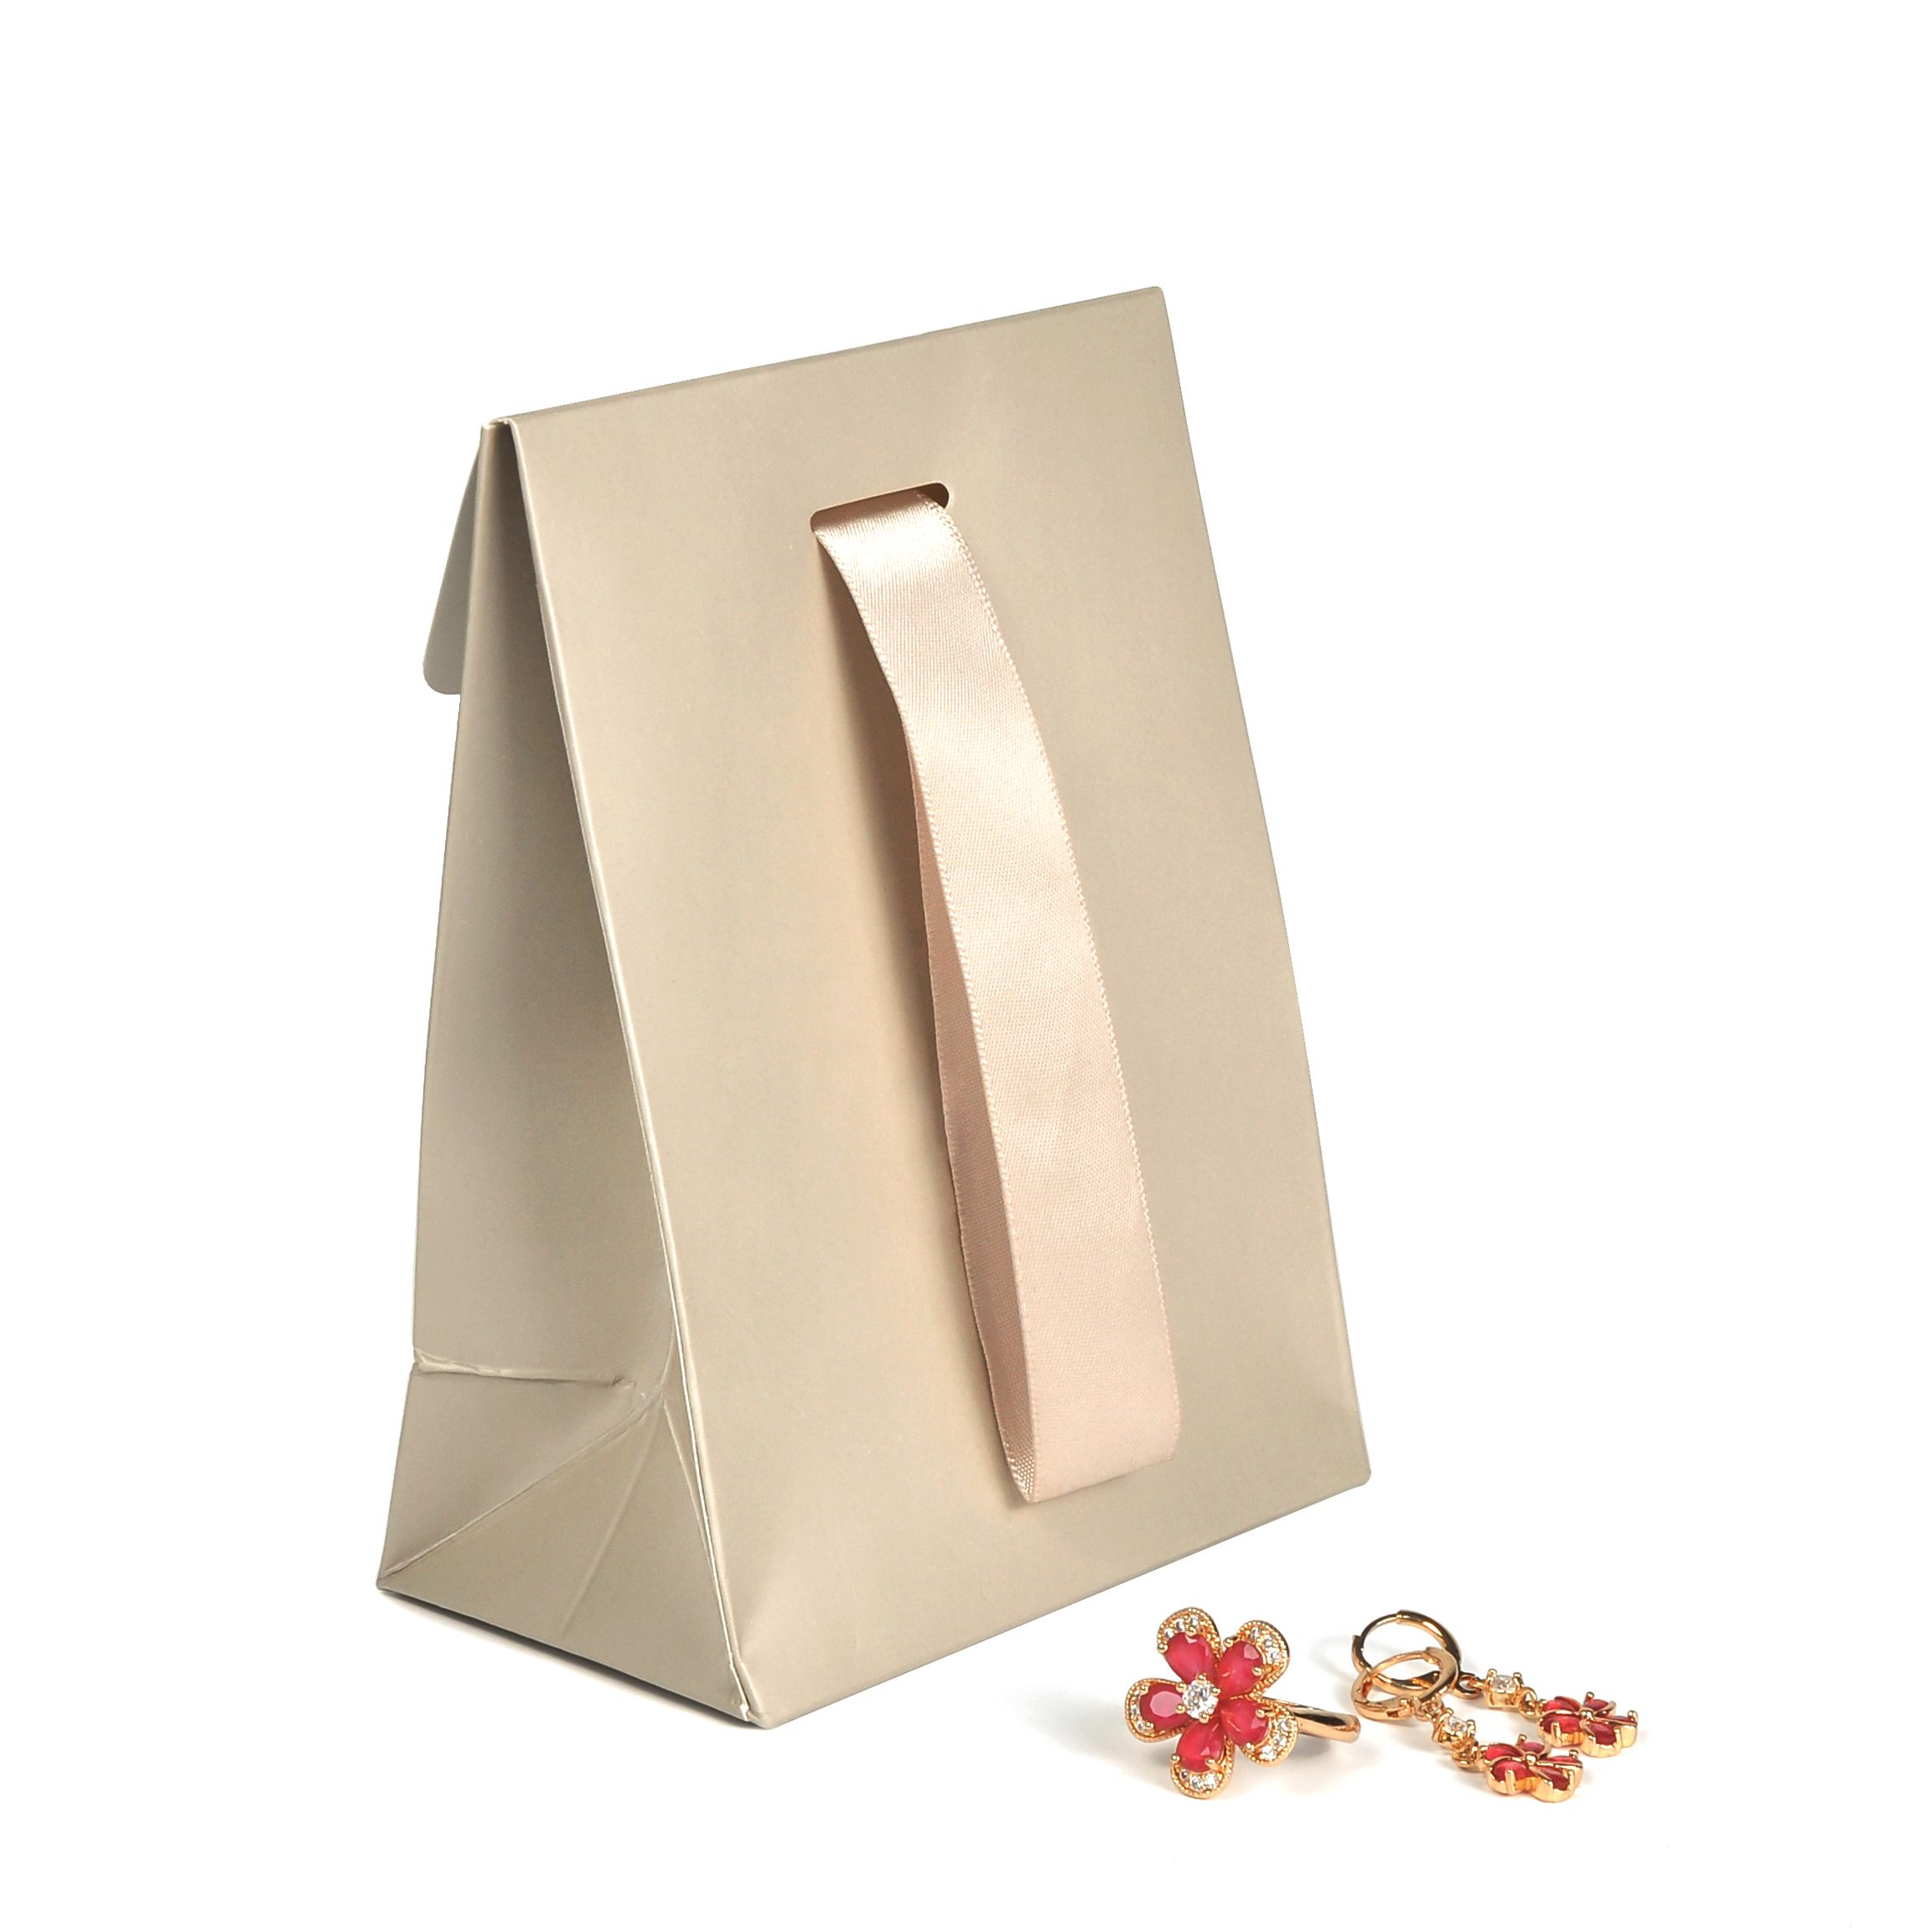 CMYK Druck Geschenkpapier Tasche Weihnachten Einkaufstasche Geschenk Verpackung Tasche